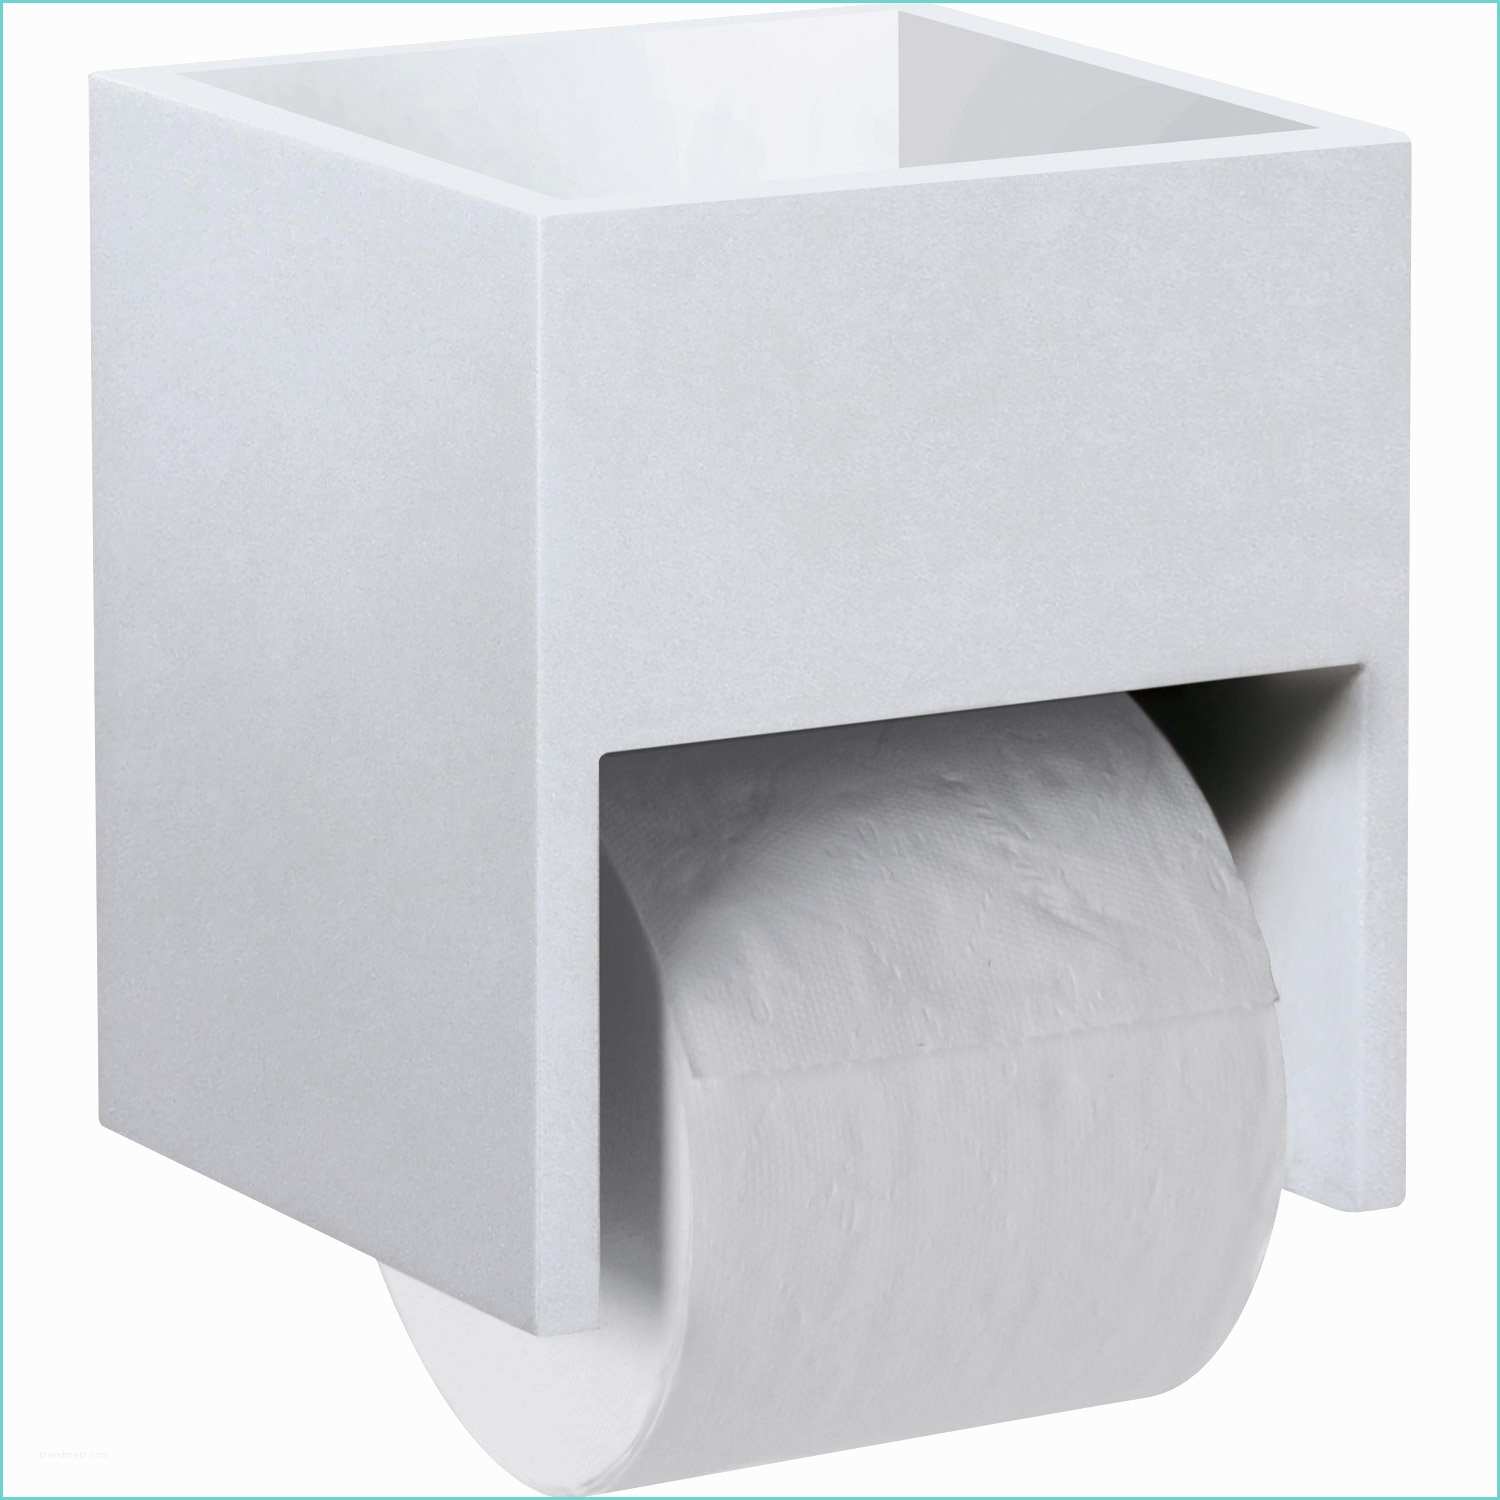 Ide Rangement Papier toilette Revger = Rangement Papier Wc Idée Inspirante Pour La